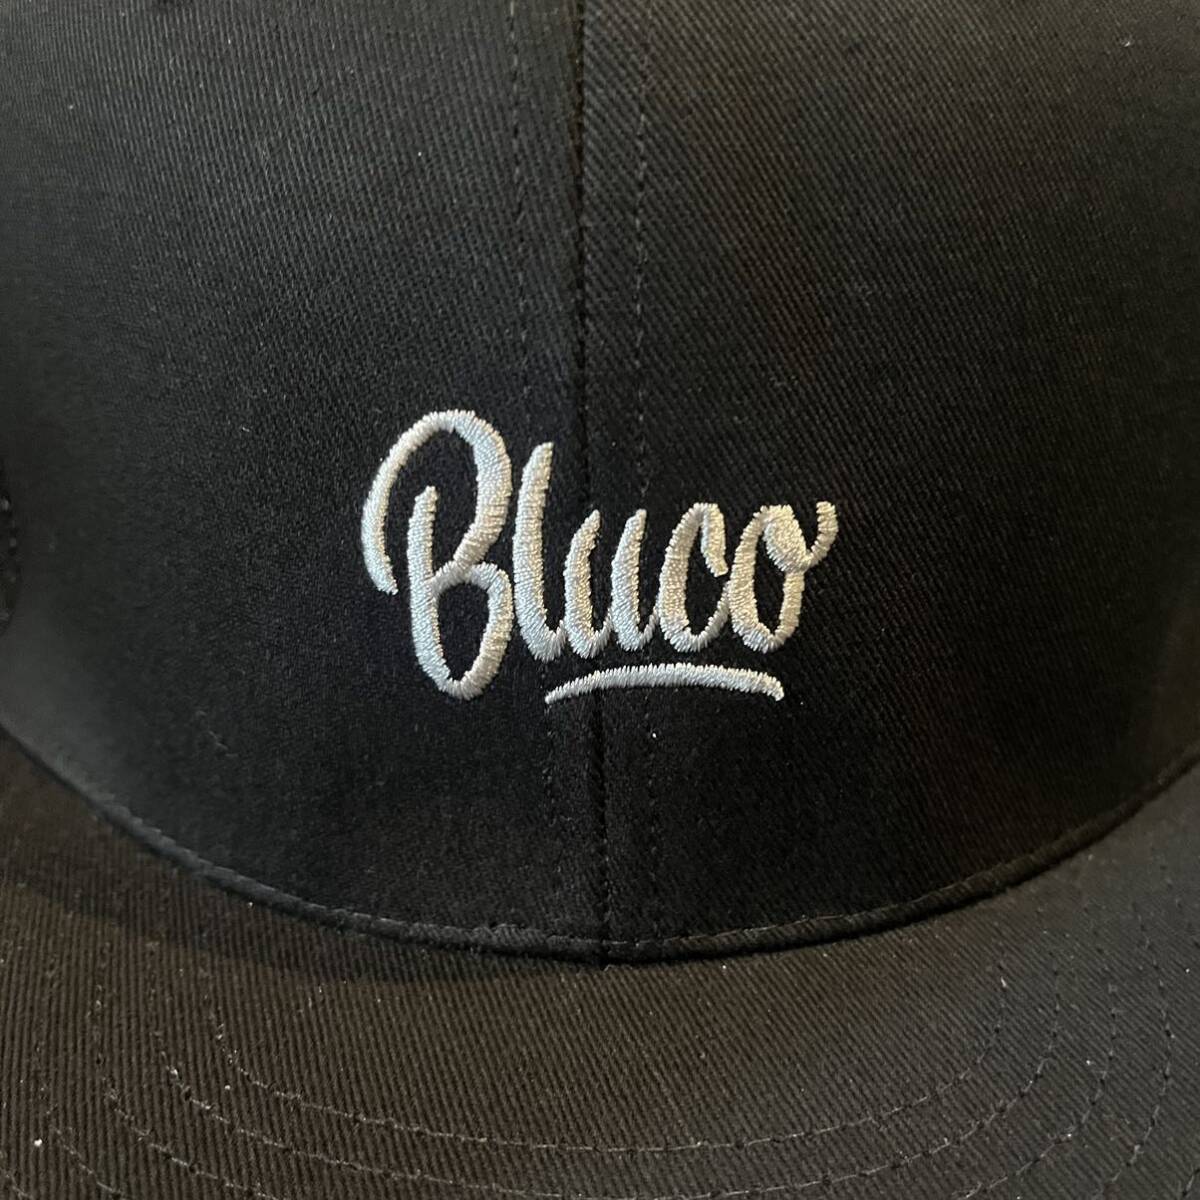 BLUCO/ブルコ 6パネルメッシュキャップ Sclipt ブラックの画像2